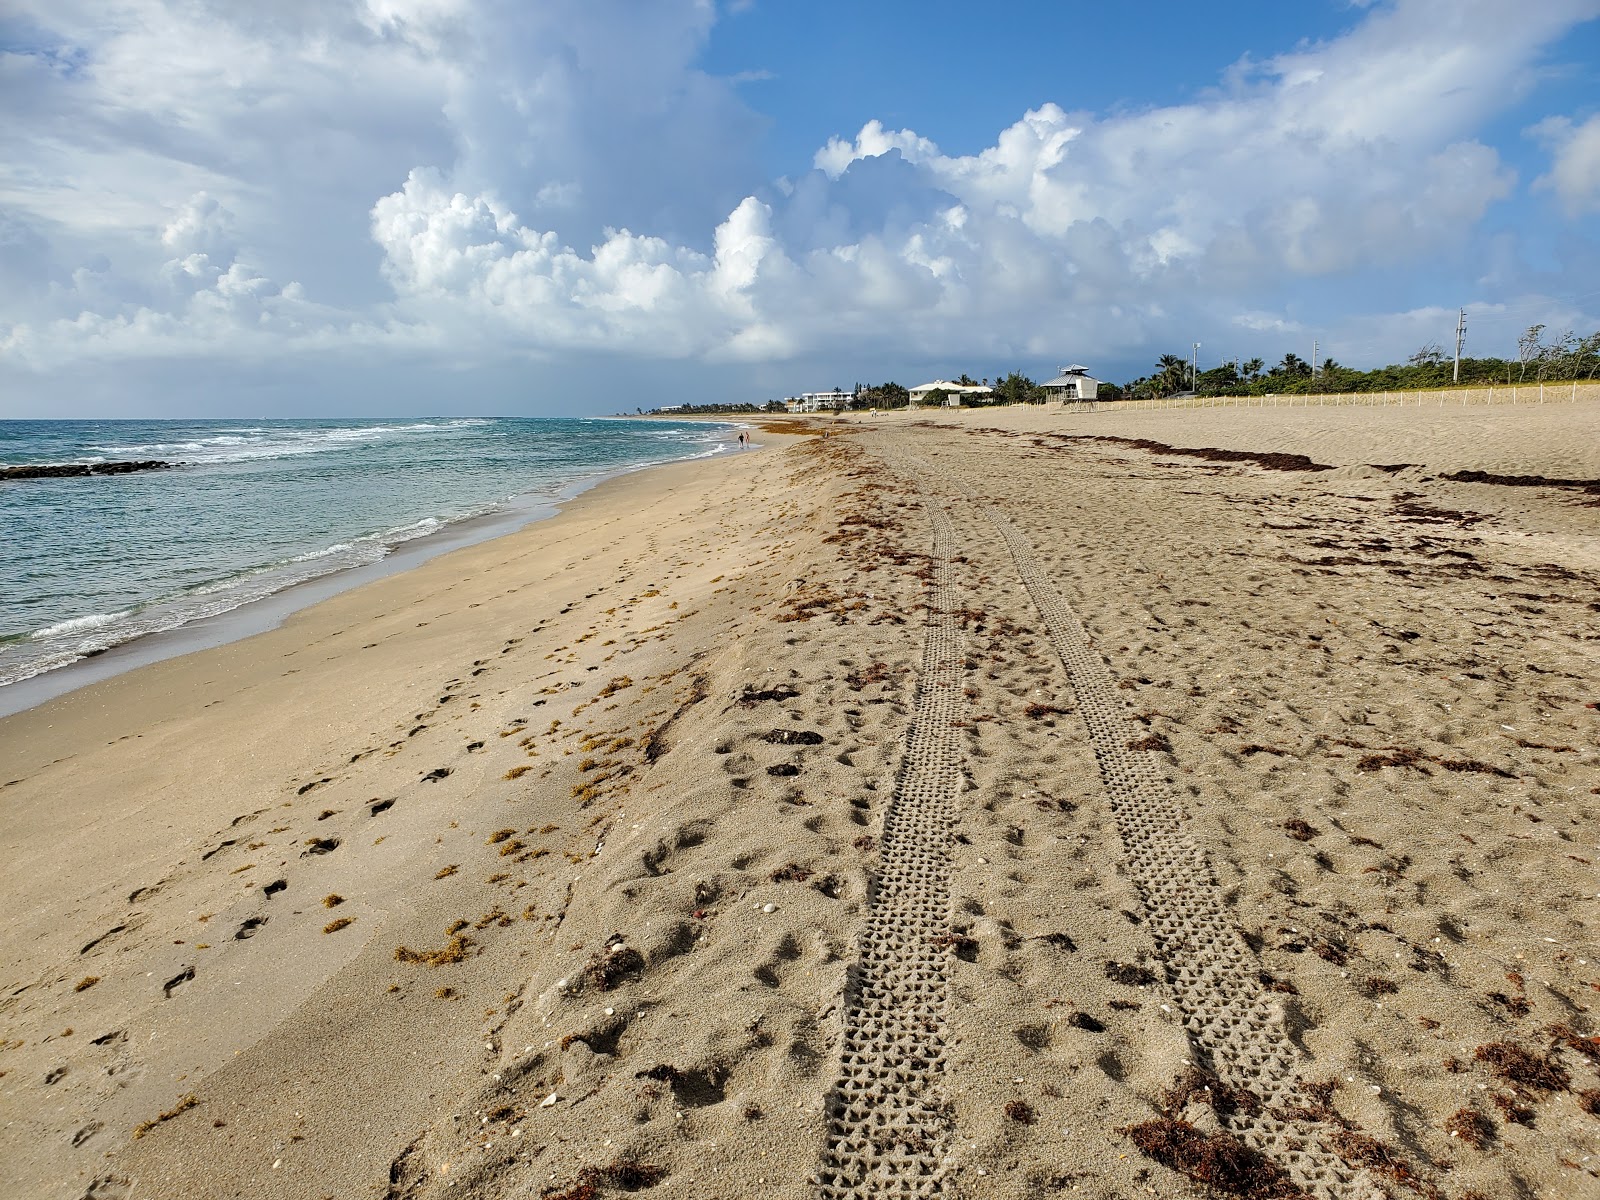 Zdjęcie Bathtub beach - popularne miejsce wśród znawców relaksu